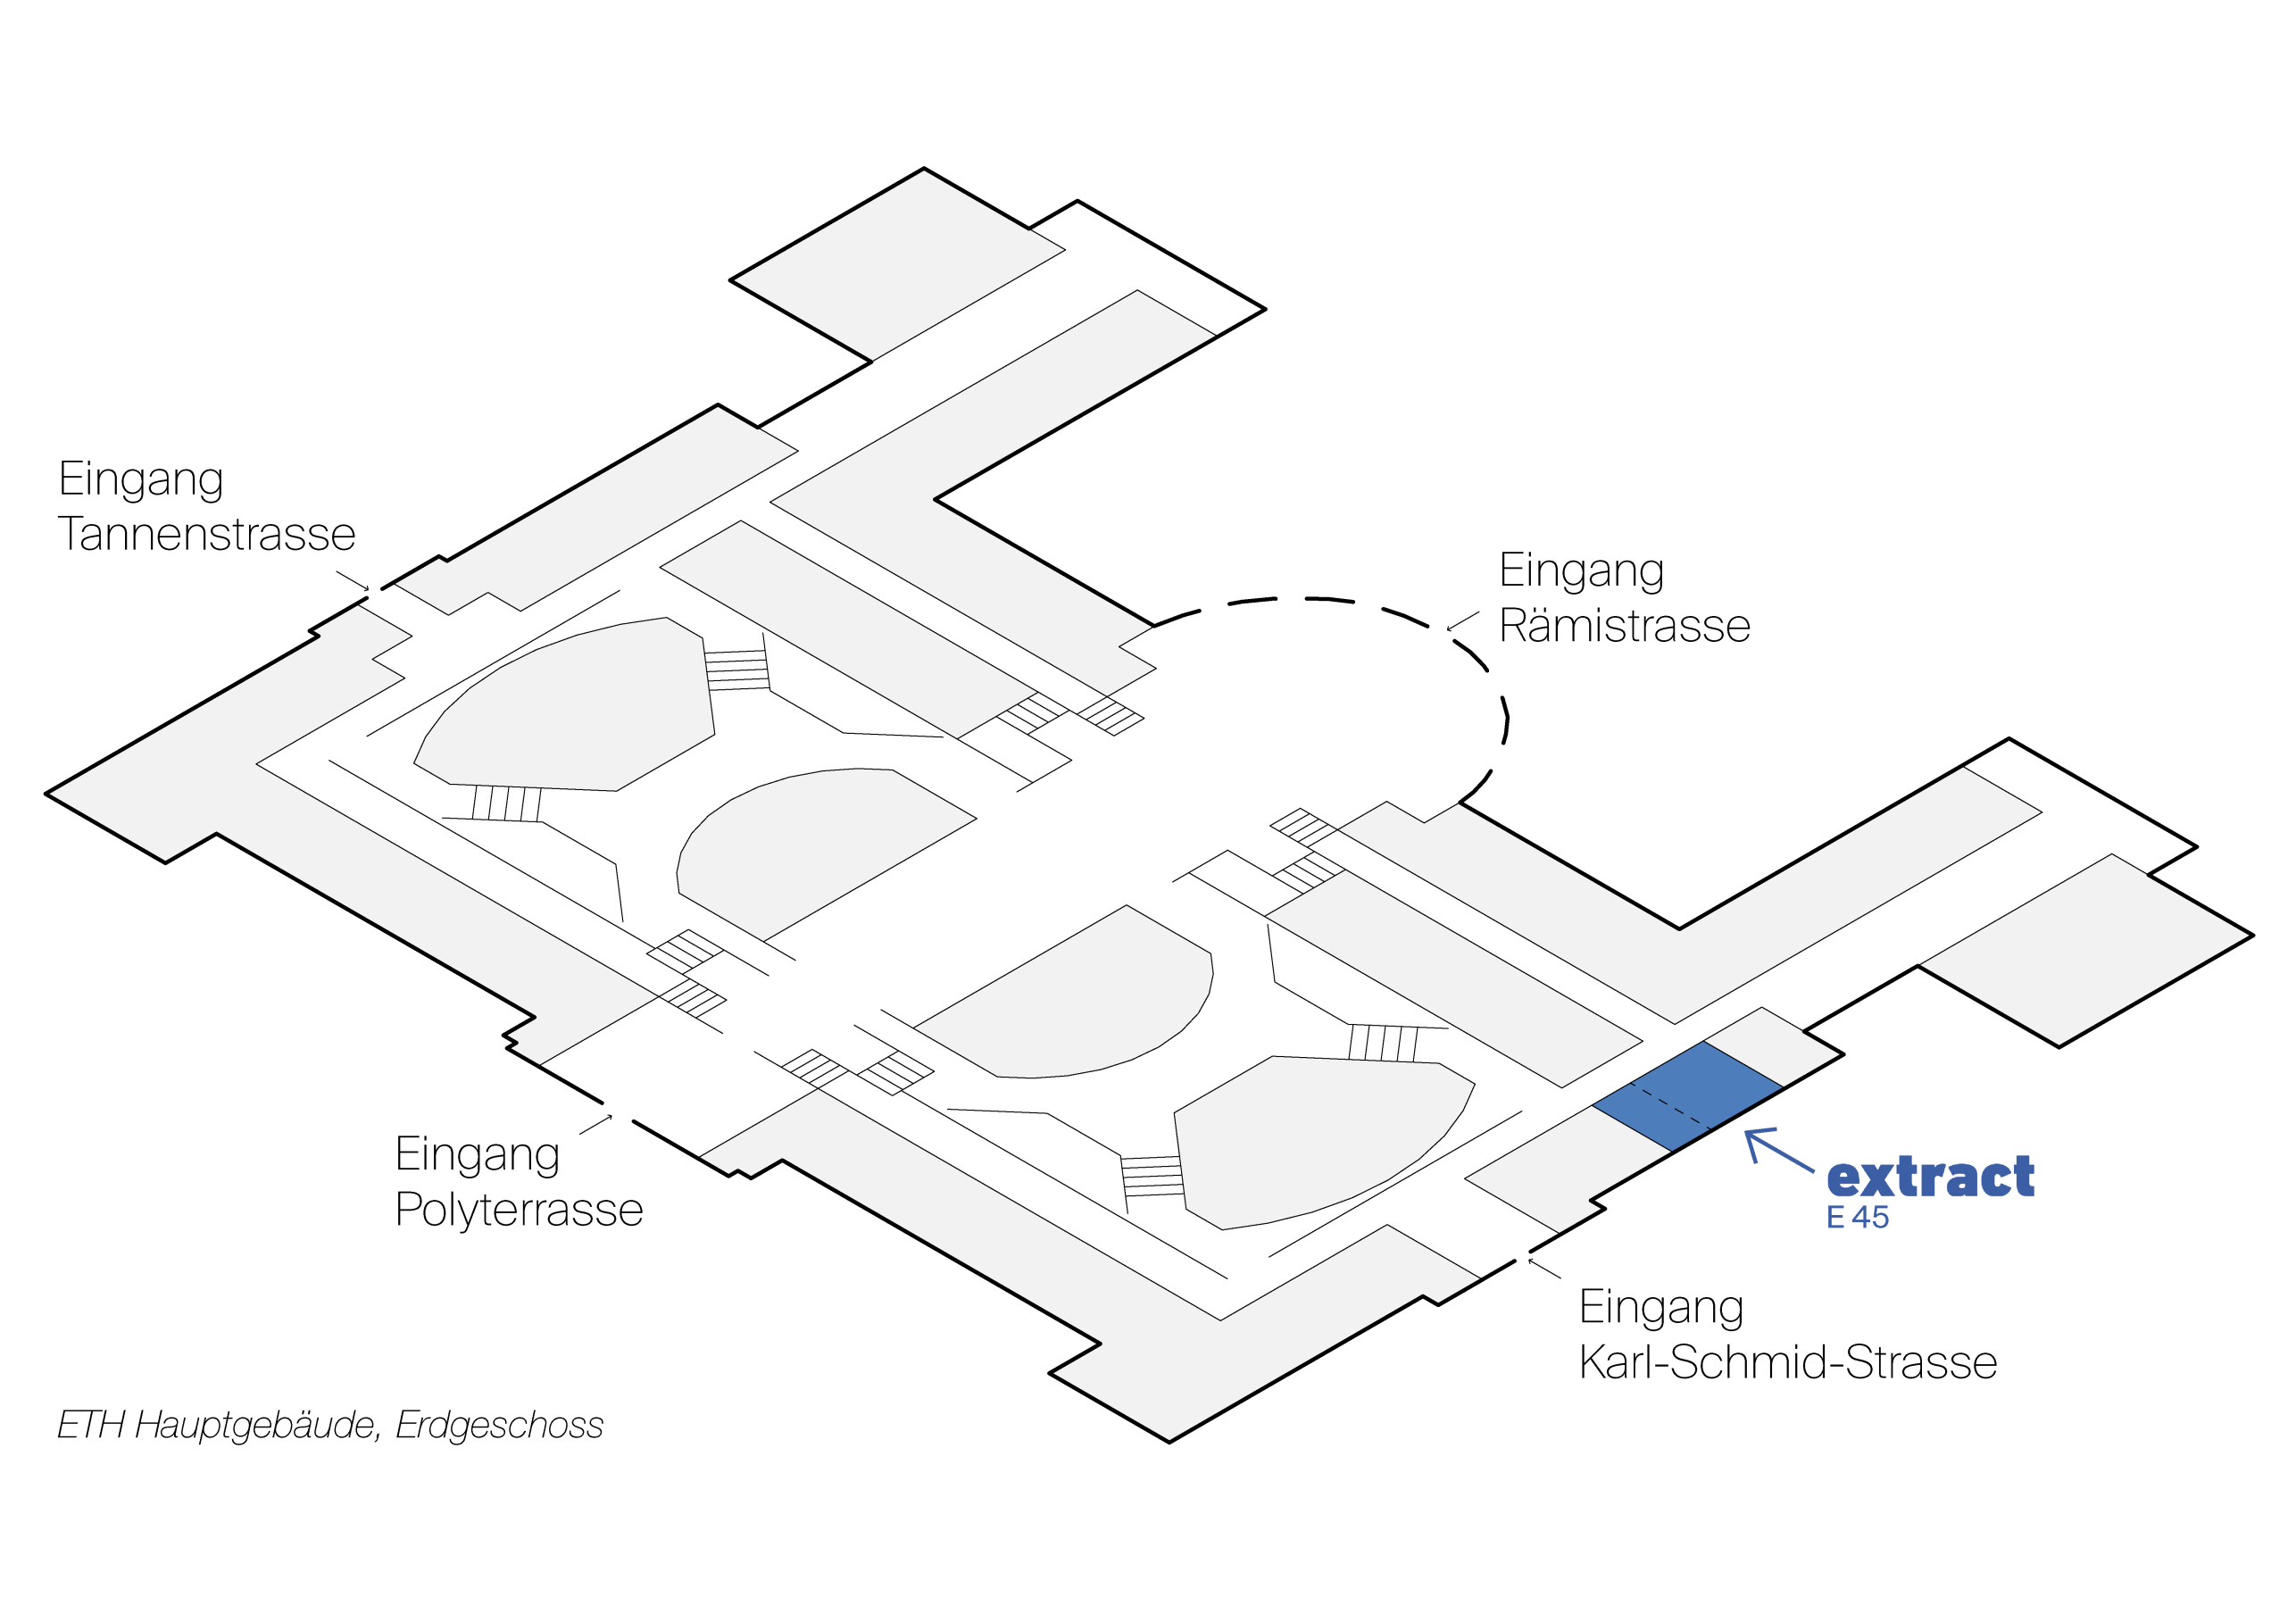 Vergrösserte Ansicht: Lageplan von extract im Hauptgebäude der ETH Zürich